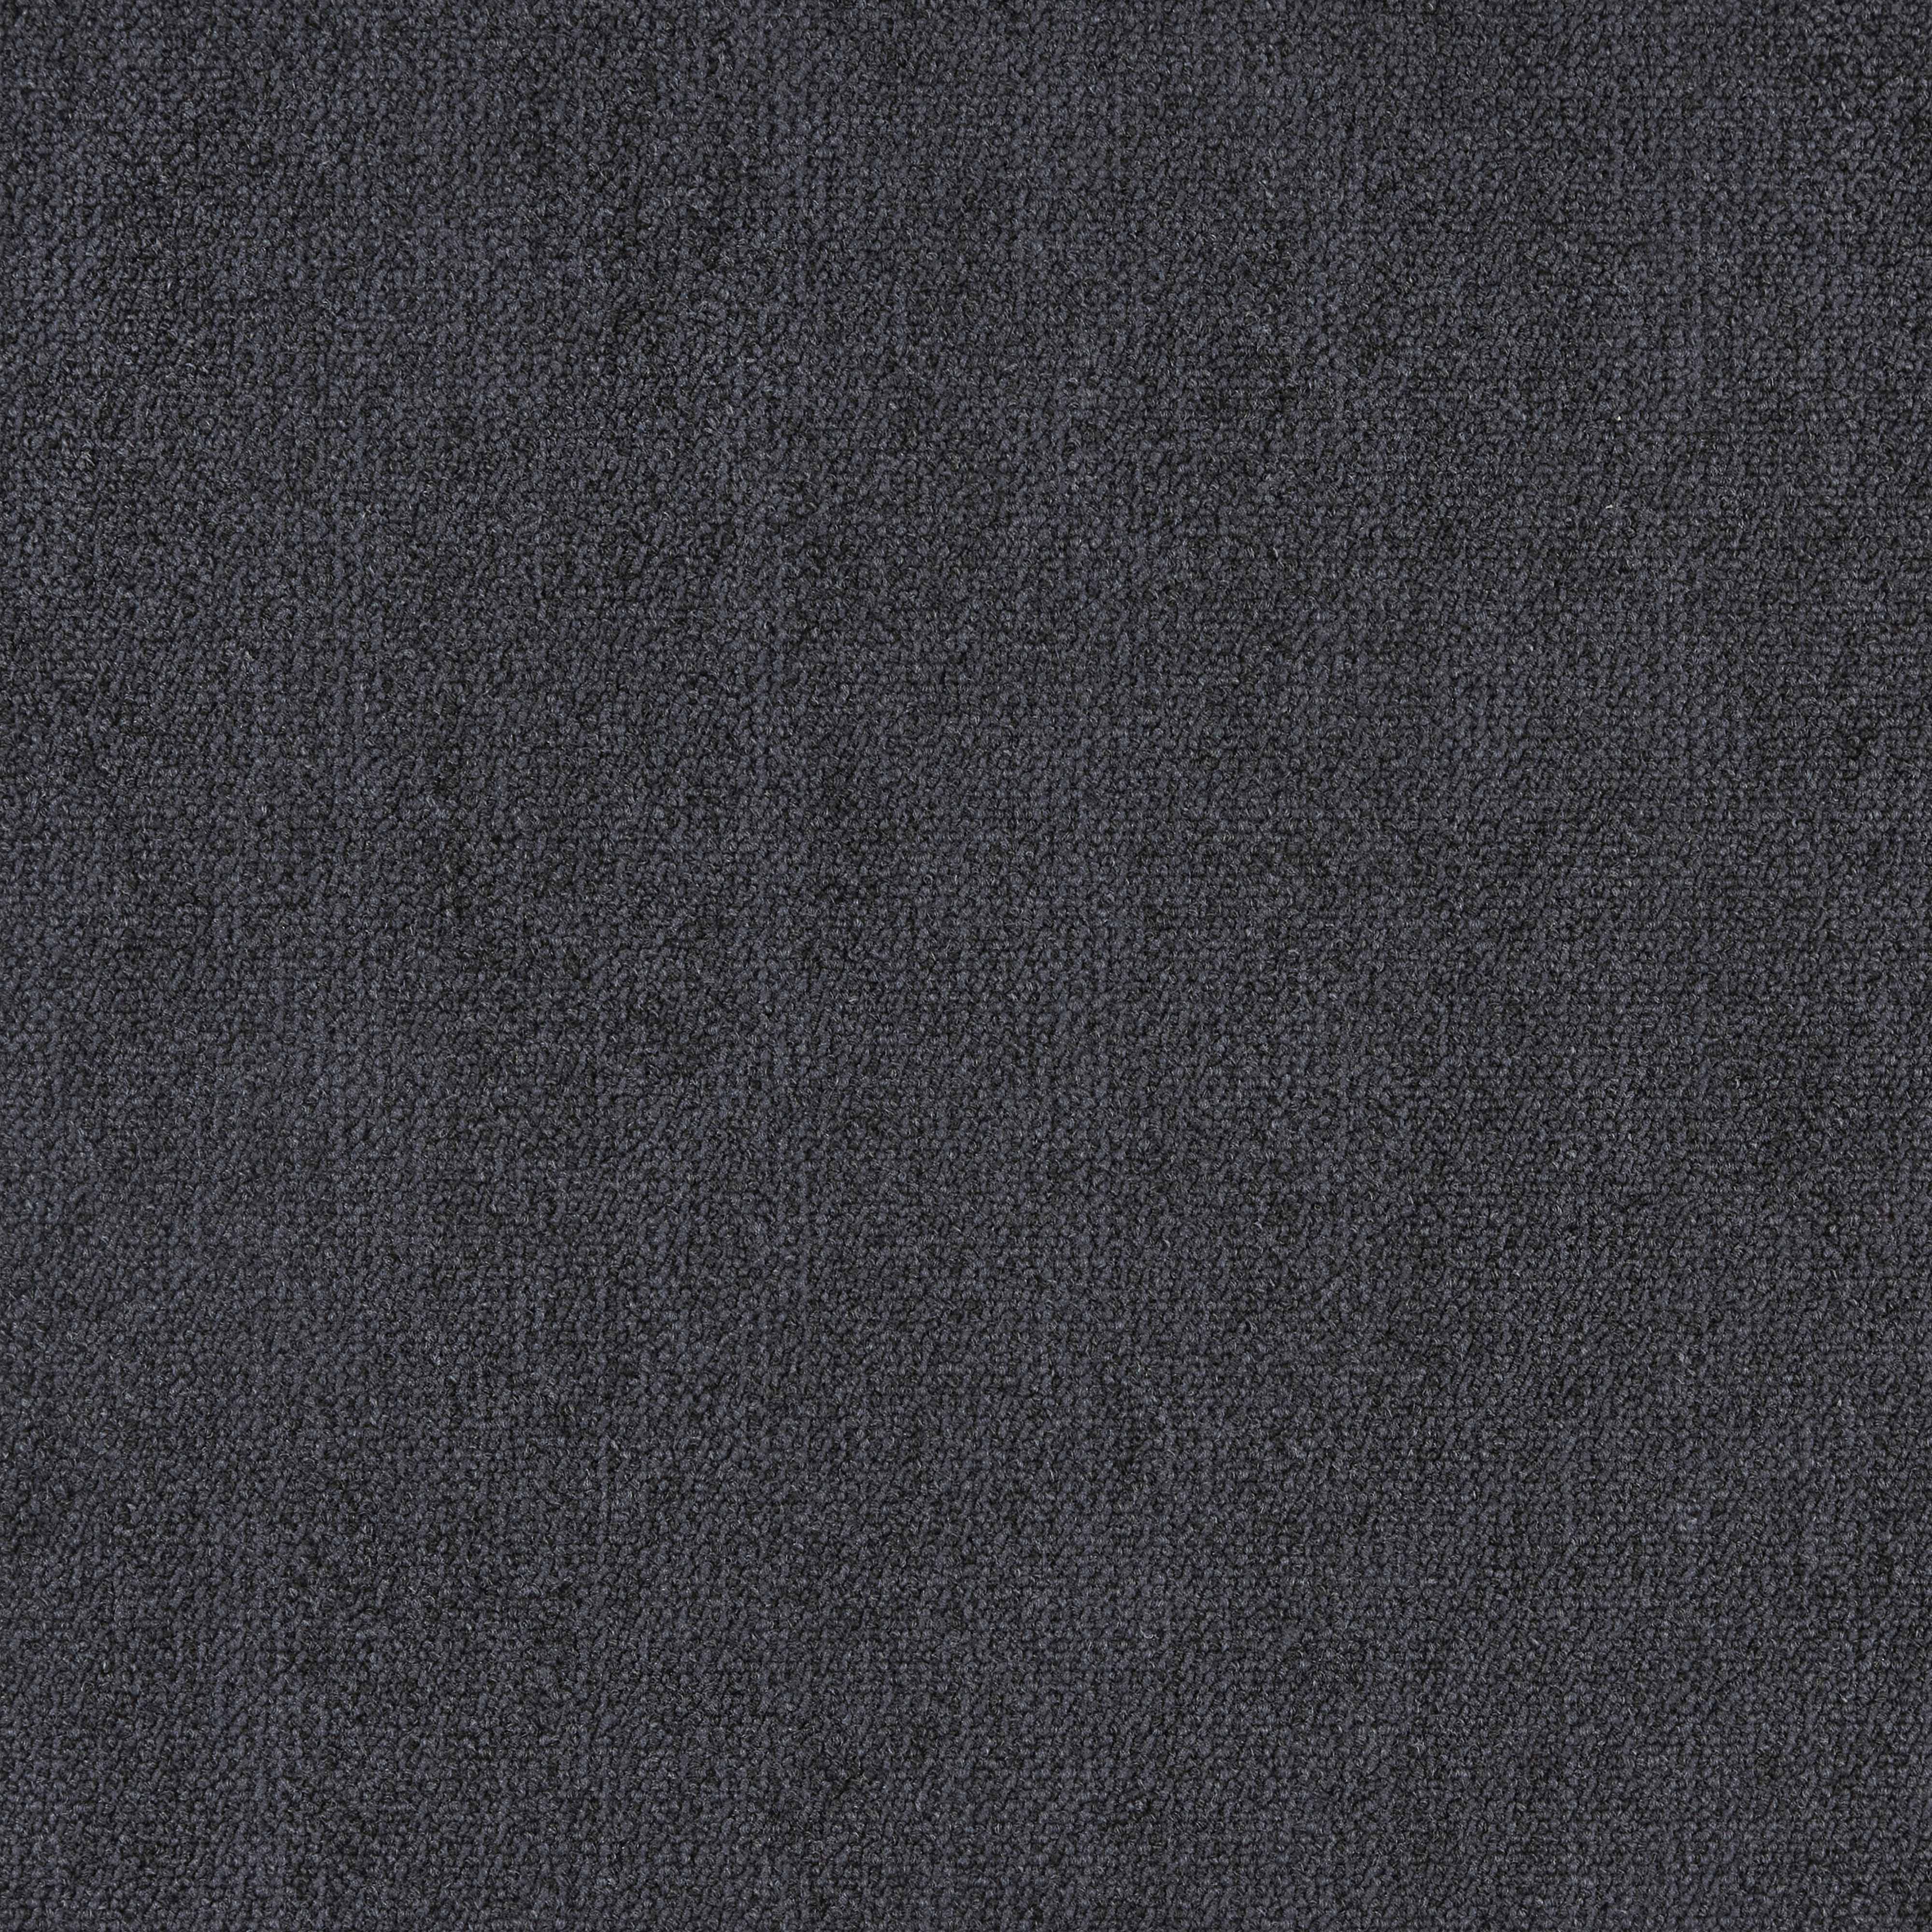 Ковровая плитка Illusion - InnovFlor (ИнновФлор) Illusion F06 0.5*0.5 м